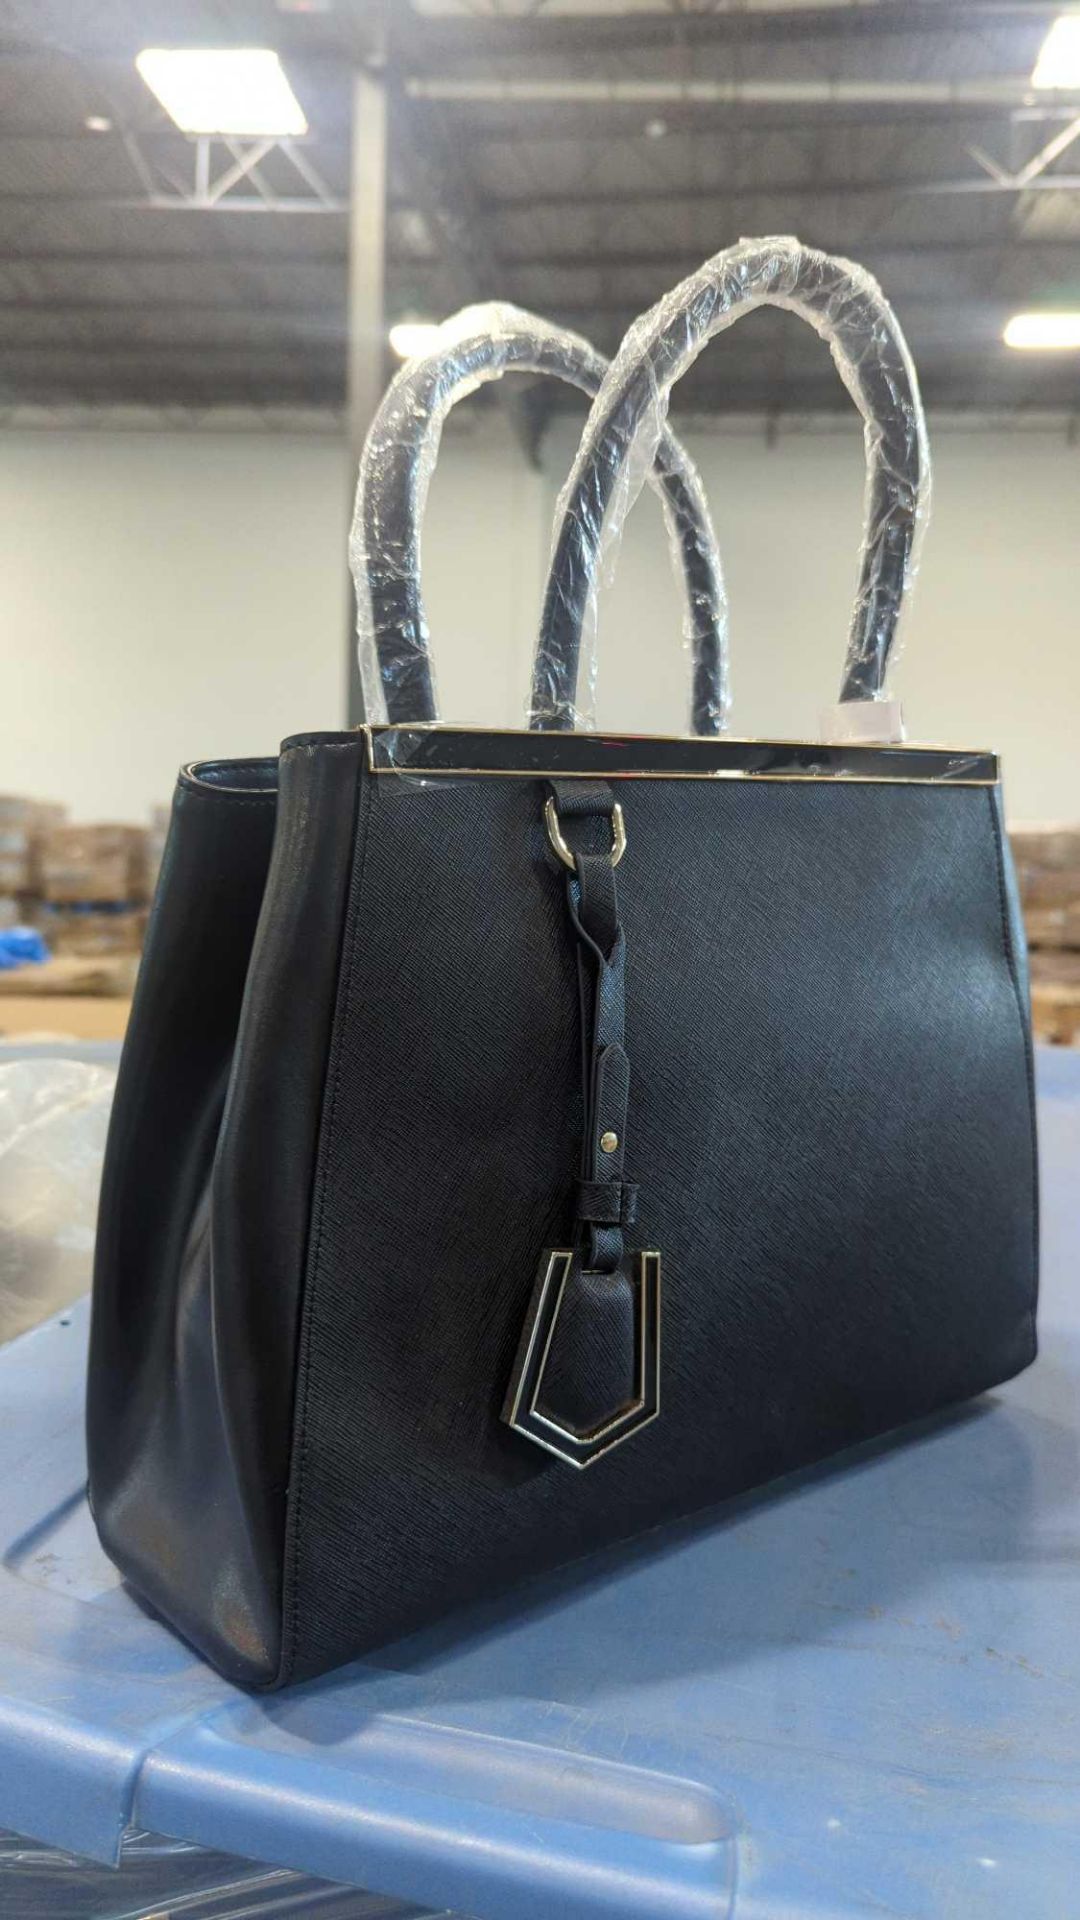 Pallet- Donna Bella Designs handbags - Image 2 of 18